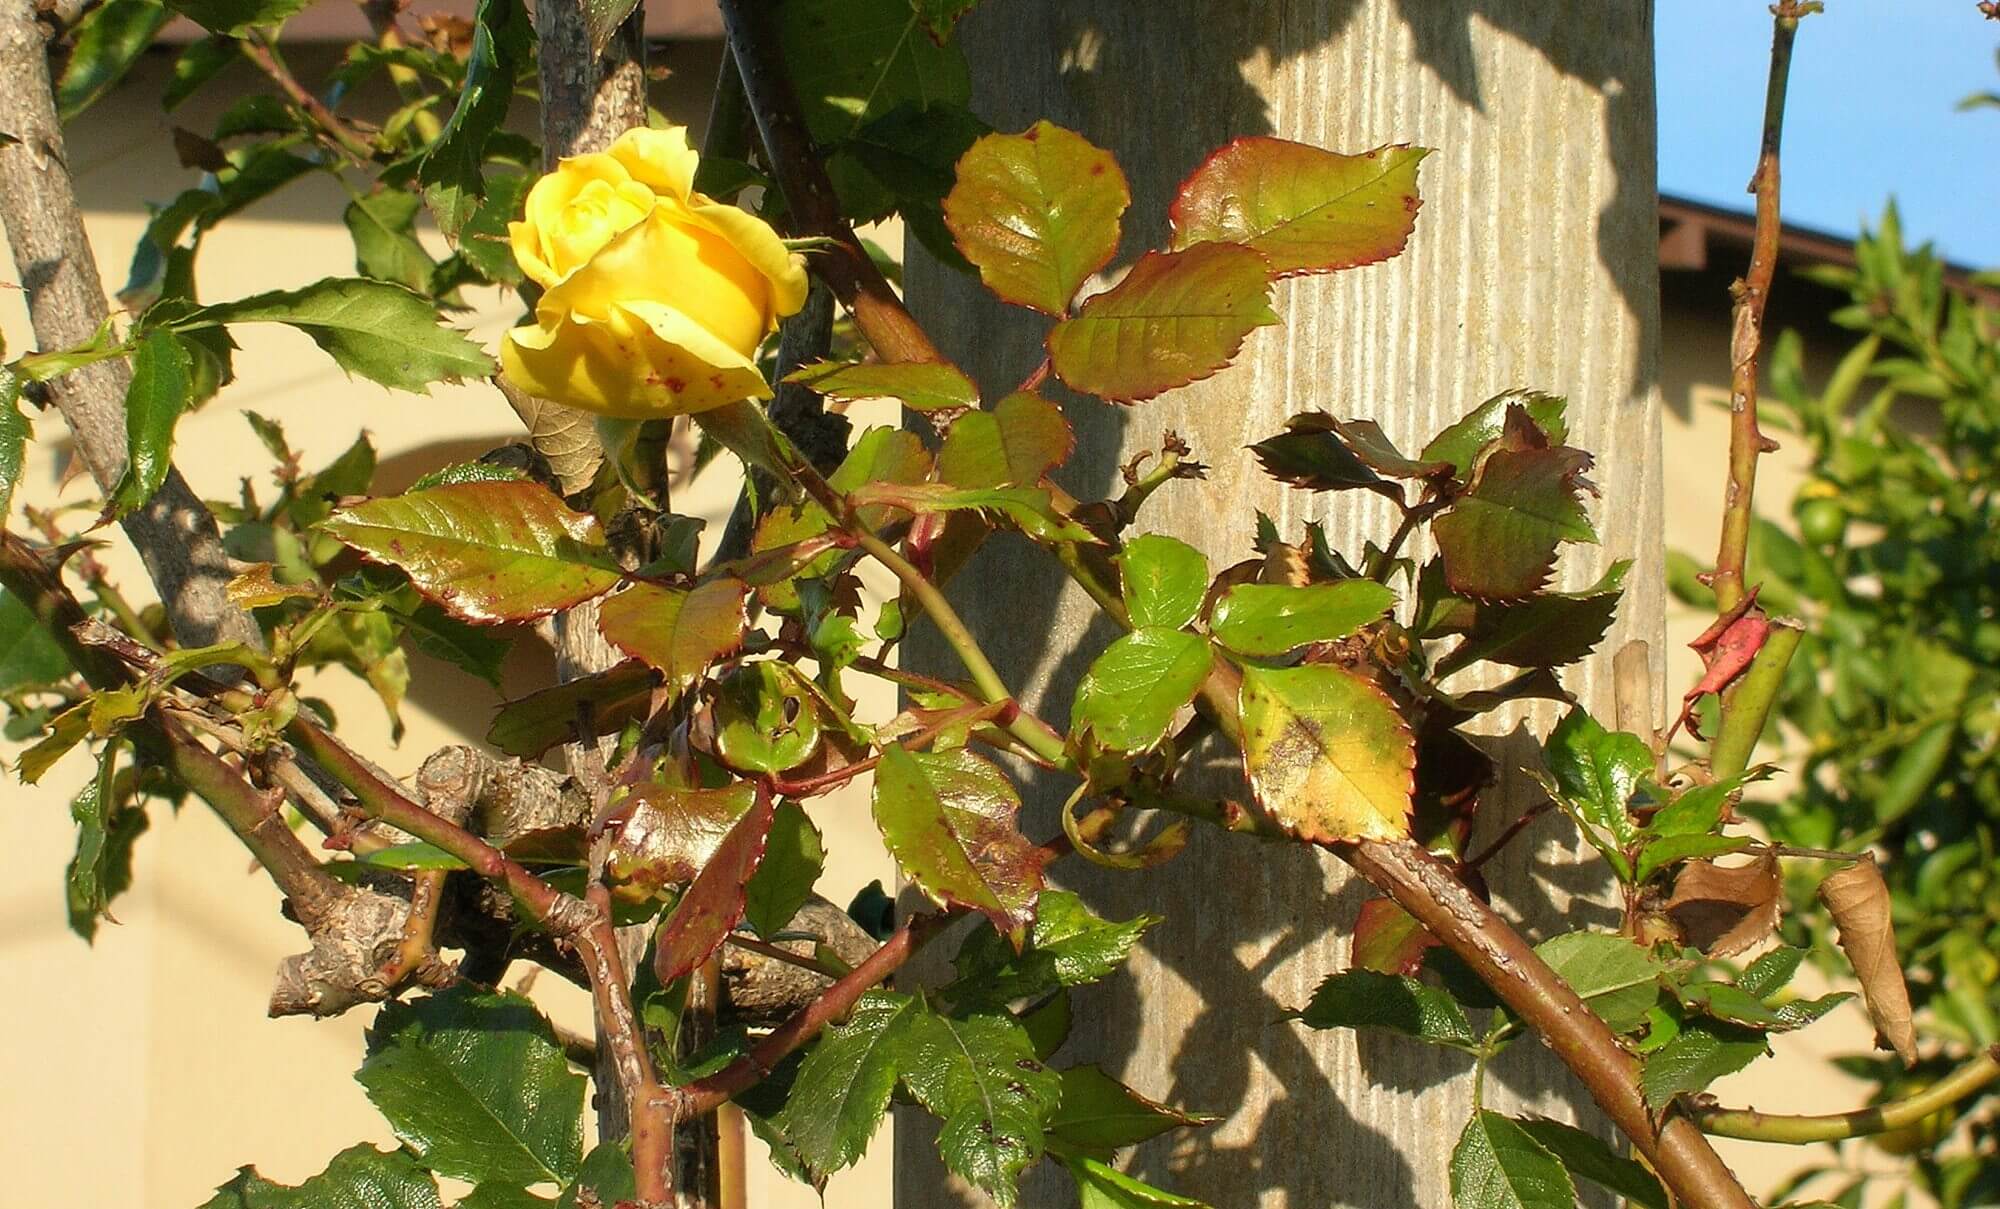 rose pruning - photo by Helen Krayenhoff